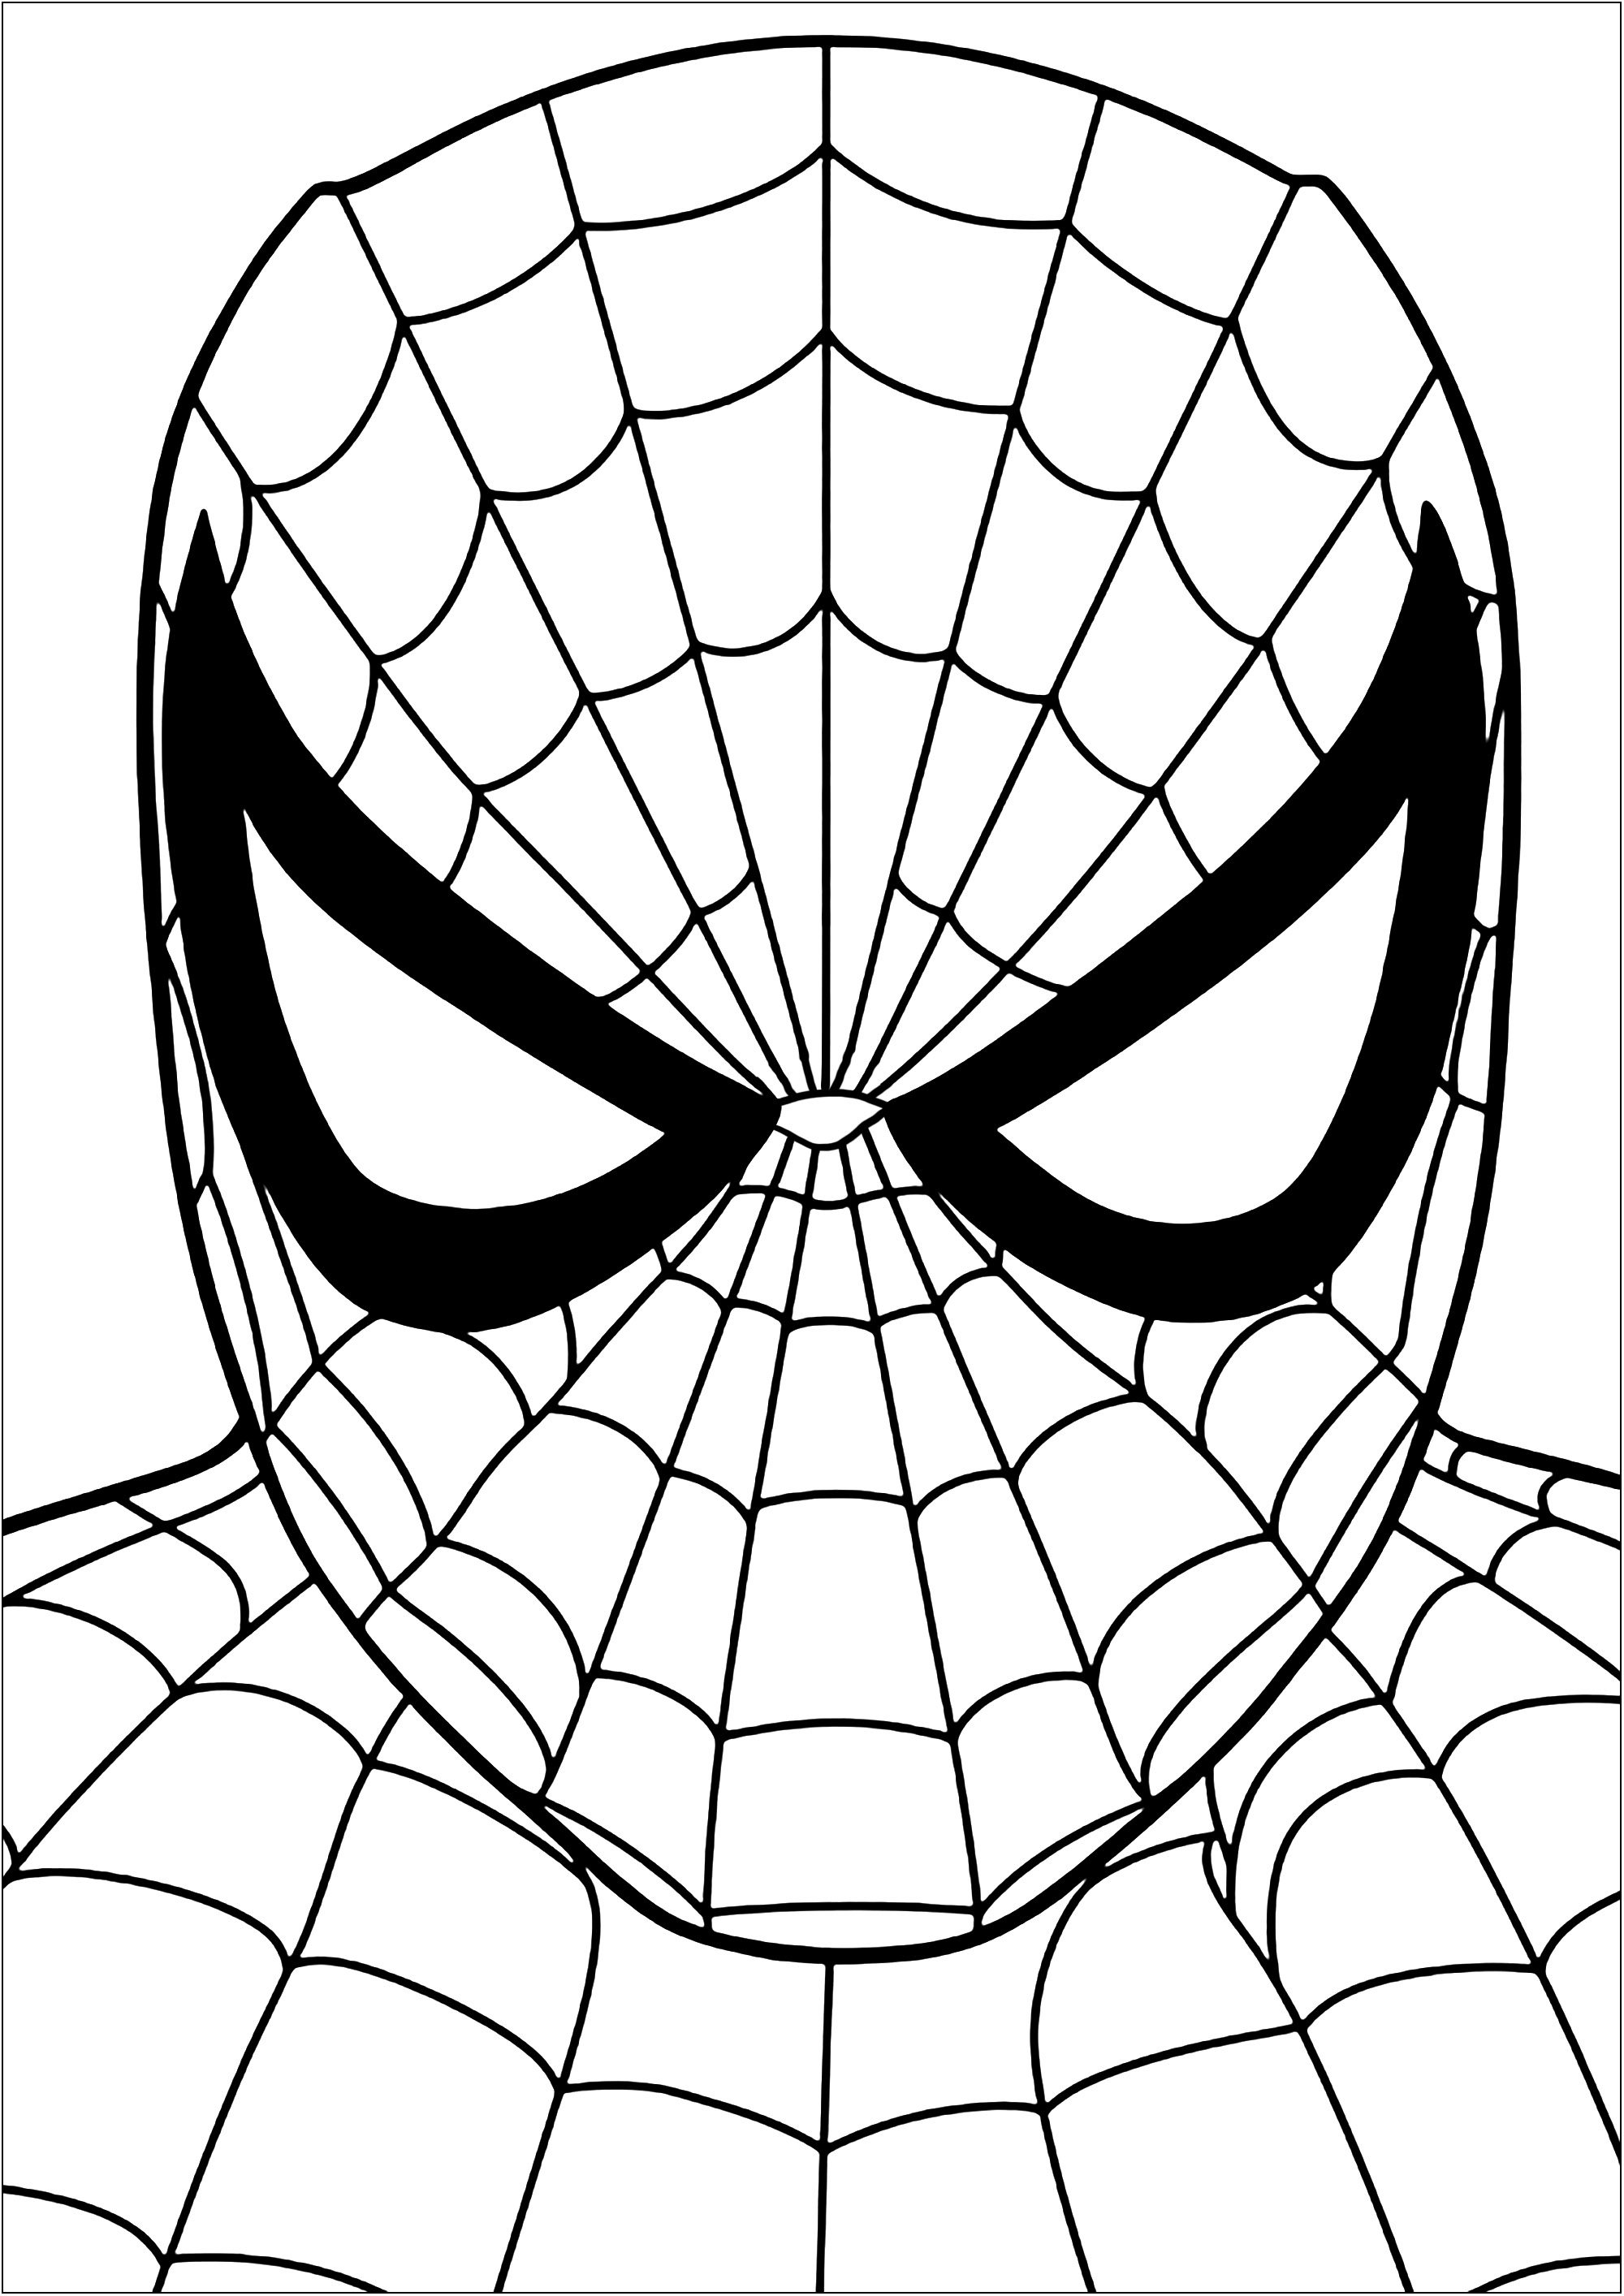 Colorear la cabeza de Spiderman. Colorea cada una de las partes de las telarañas que componen este disfraz de Spiderman, alias Peter Parker.